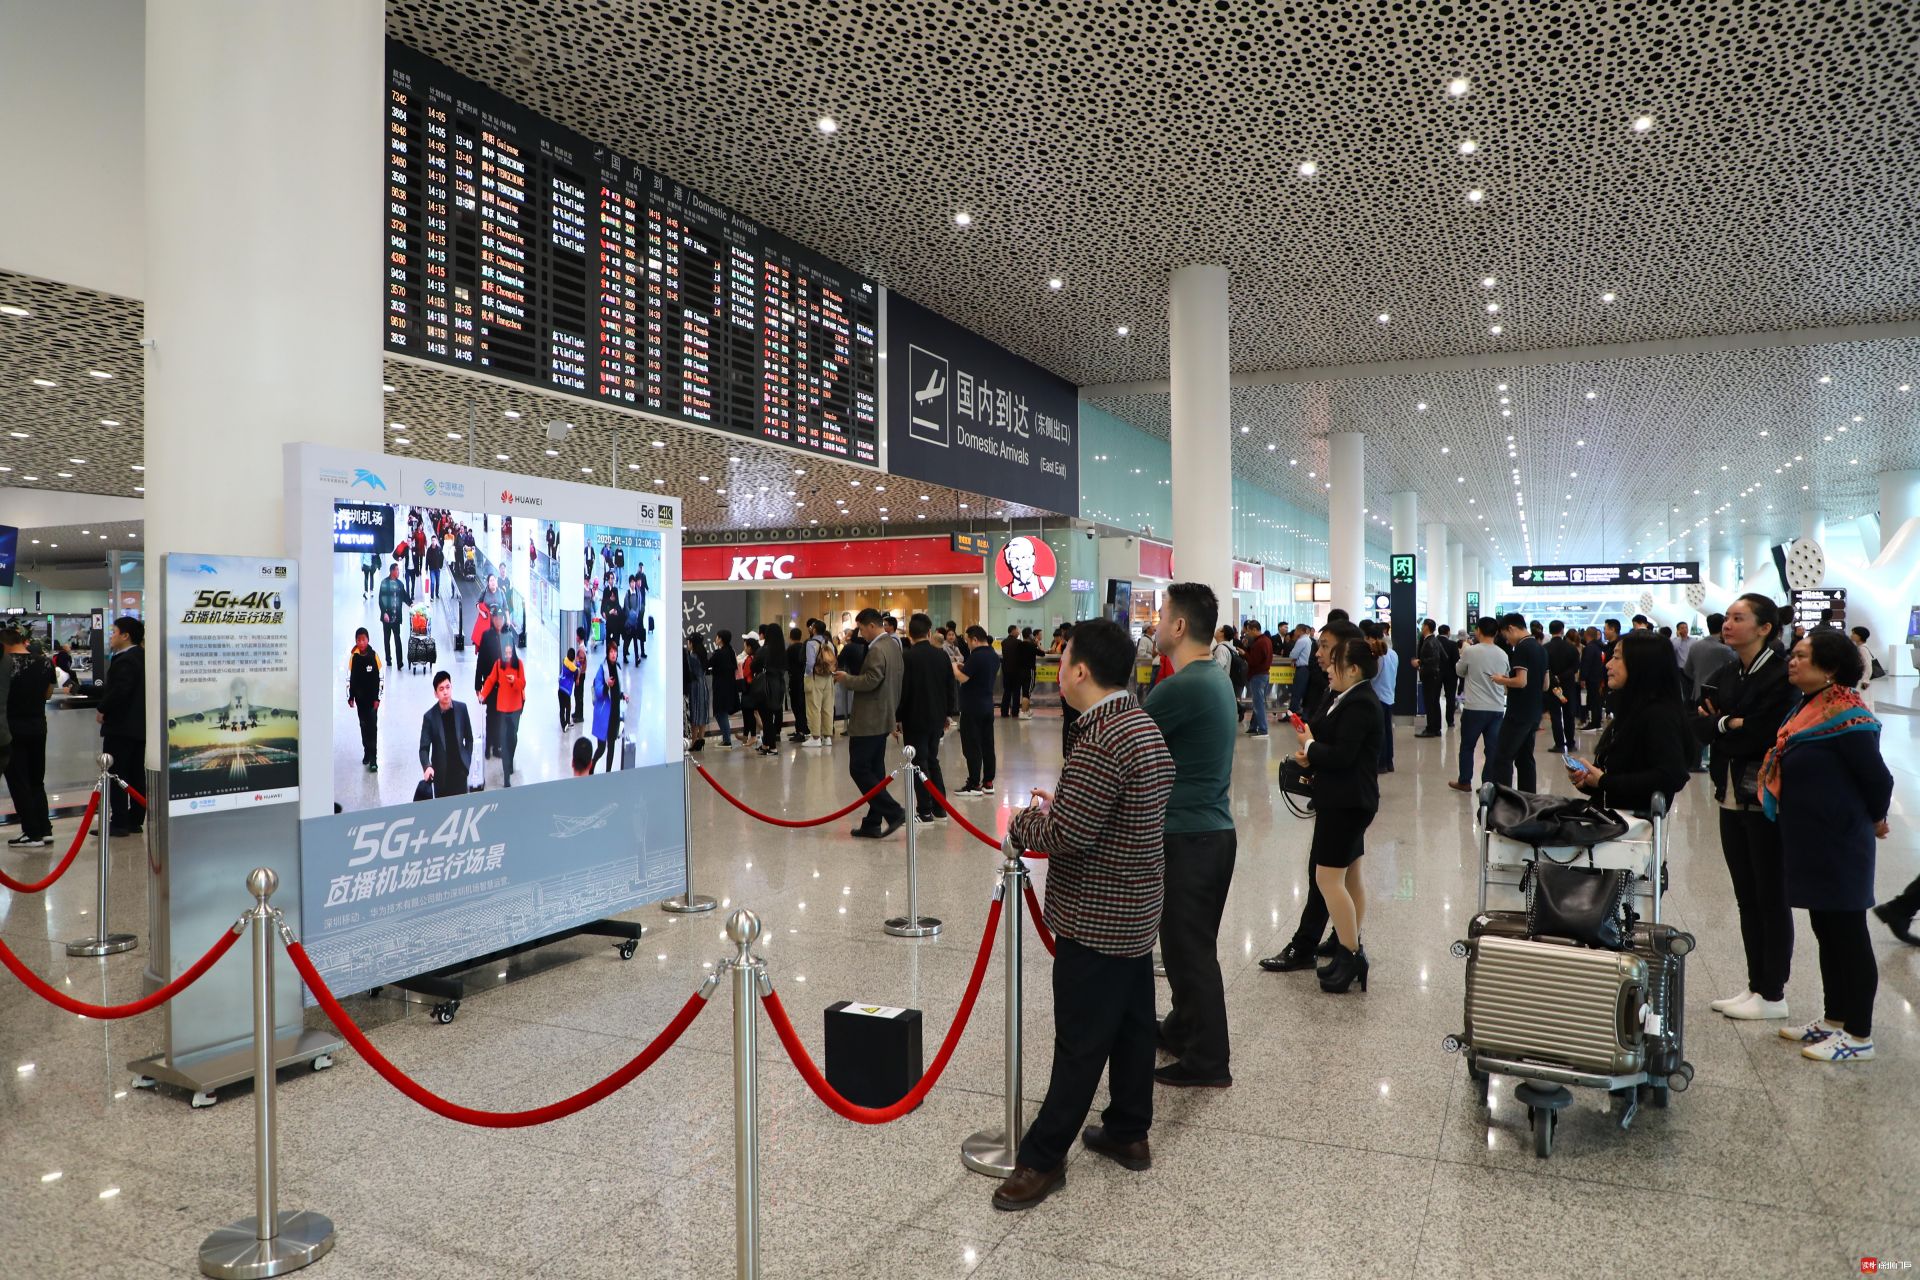 深圳机场5G应用覆盖机场服务、运行、安全各领域  4个项目被授予“深圳市5G政务应用重点项目”